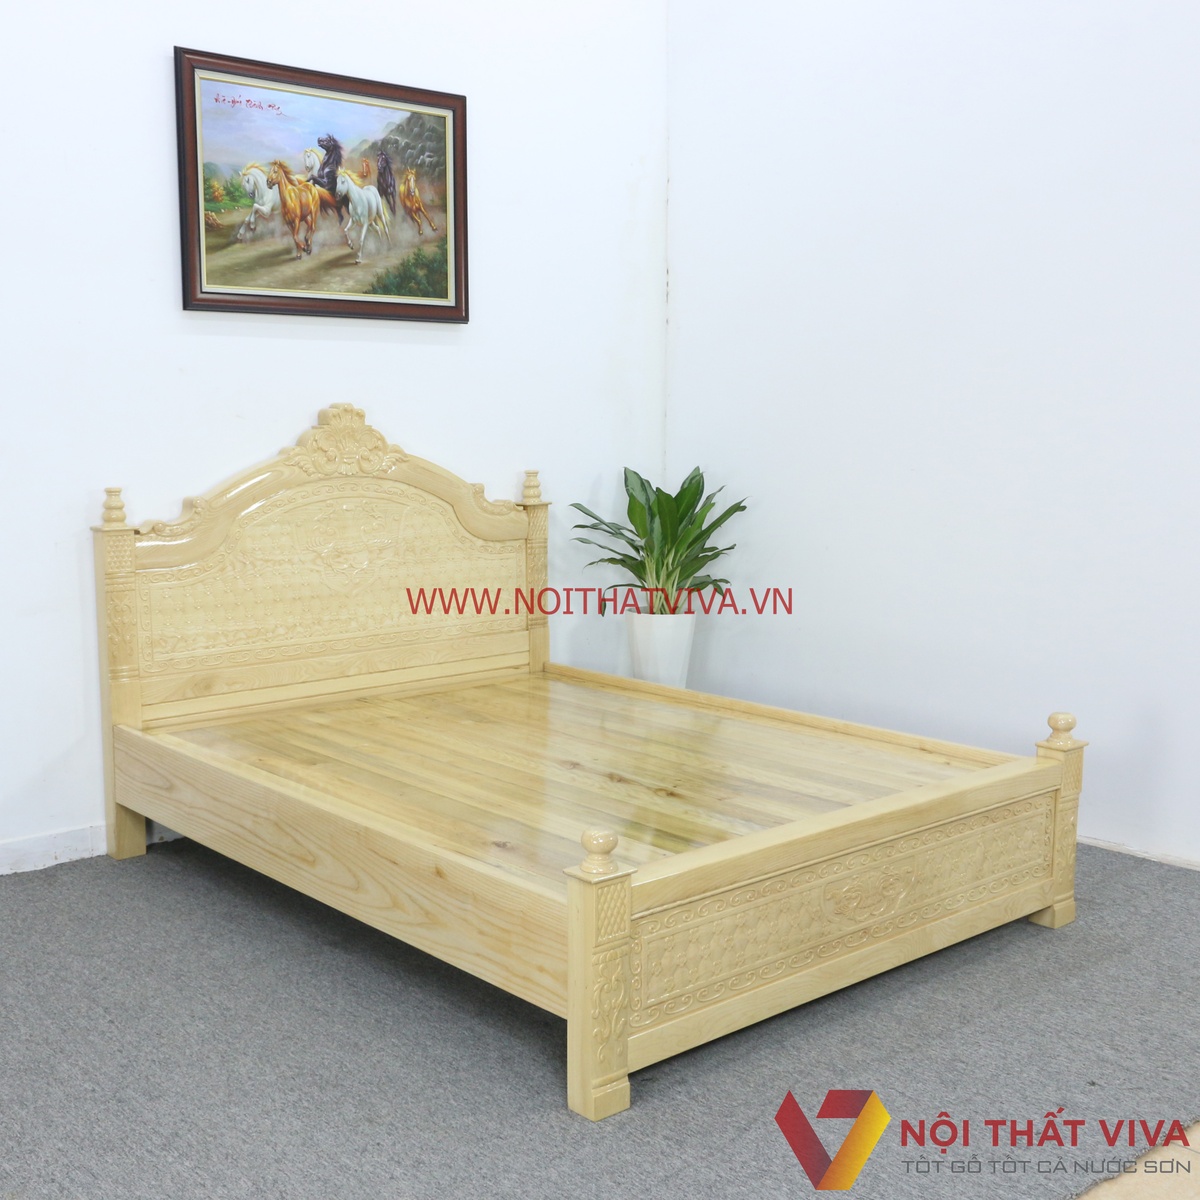 Top những mẫu giường ngủ tân cổ điển gỗ tự nhiên đang được bán ...